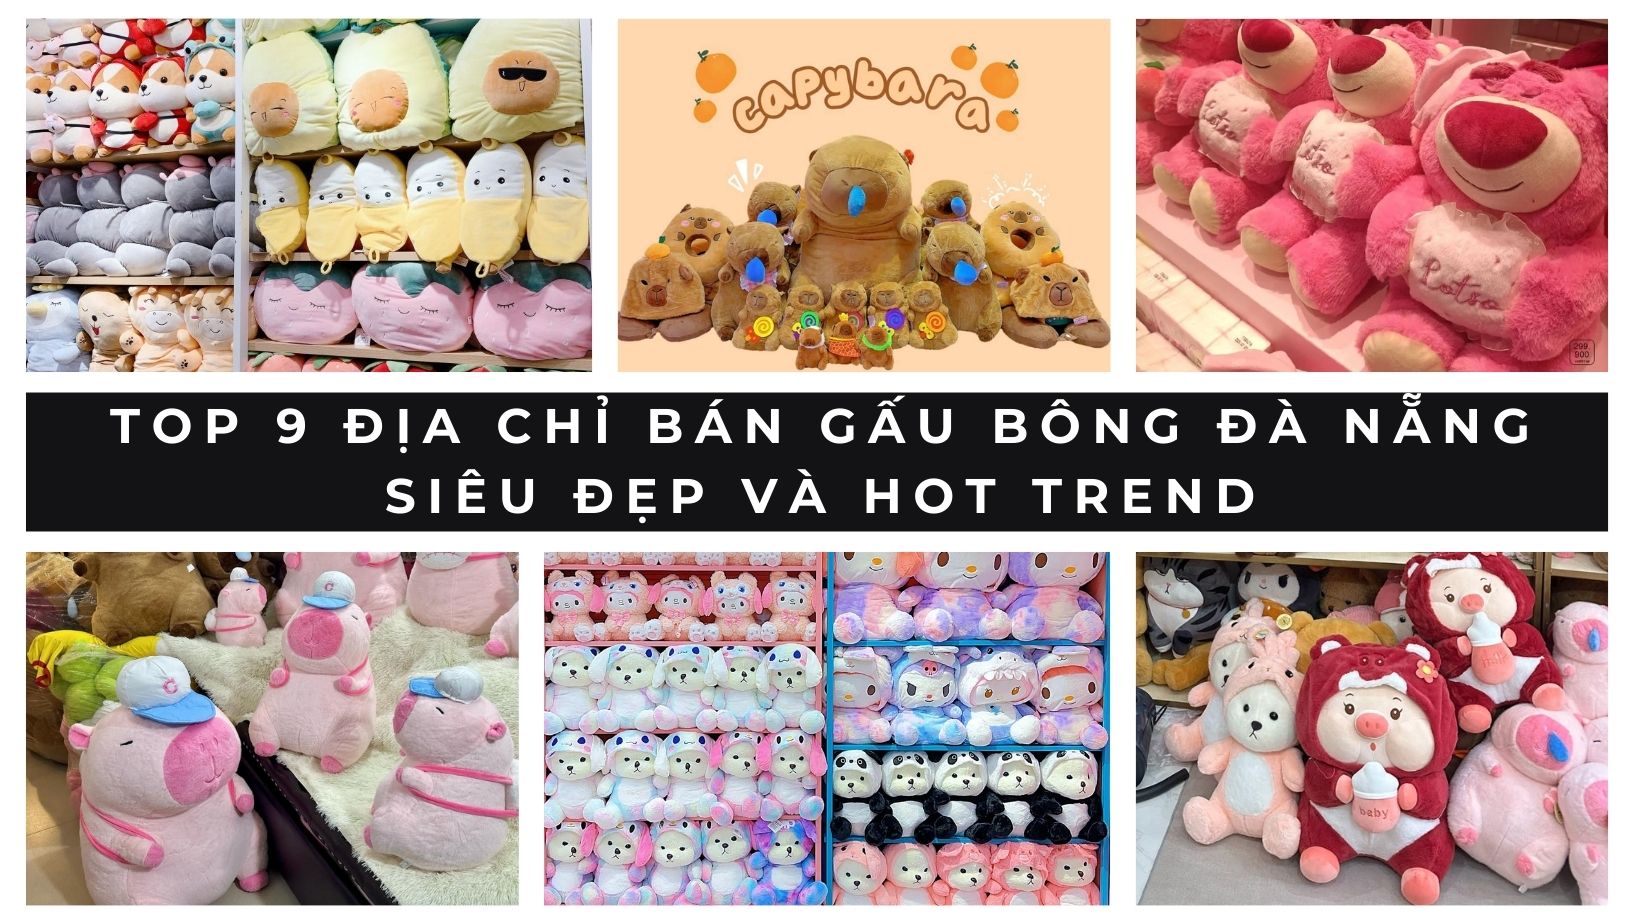 Top 9 địa chỉ bán gấu bông Đà Nẵng siêu đẹp và hot trend